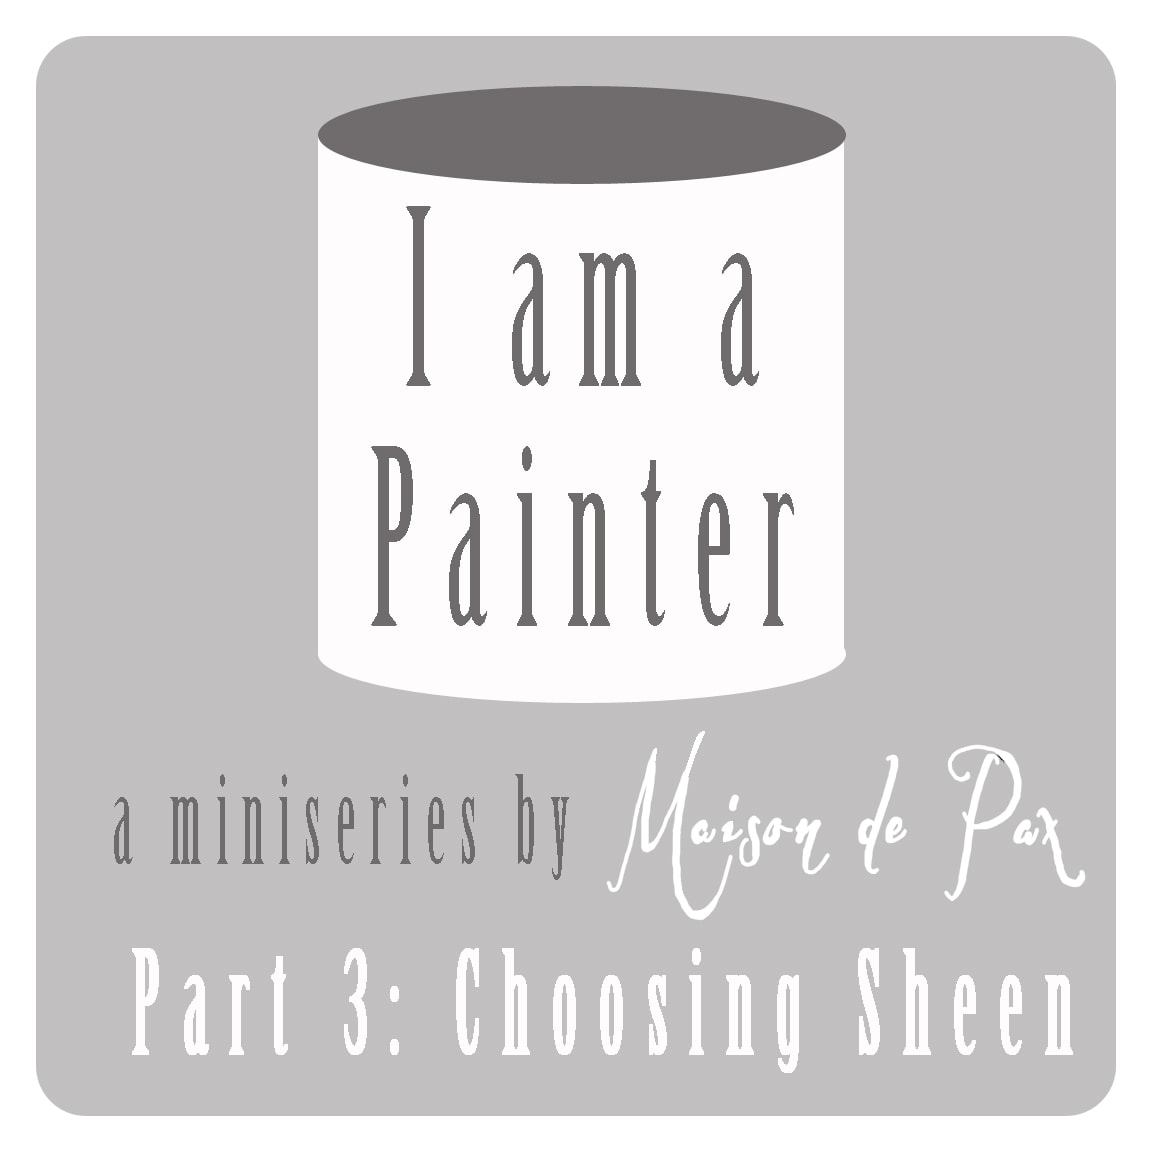 I am a Painter: choosing sheen